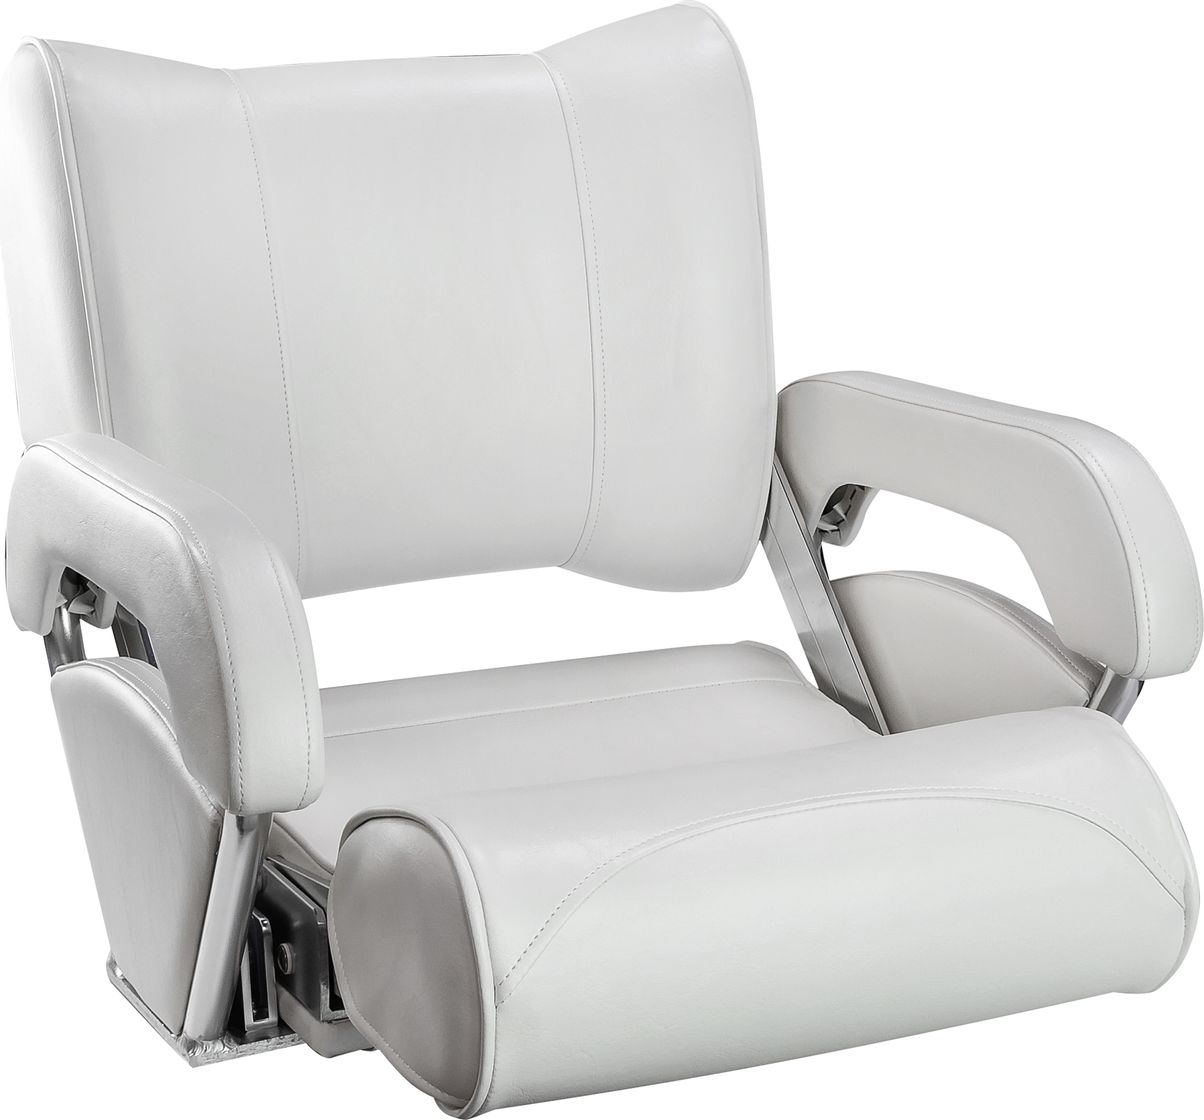 Кресло с перекидной спинкой и болстером Twin 46 Flip Up, обивка белый винил 15102W-MR кресло mealux ergoback kp y 1020 kp обивка розовая однотонная